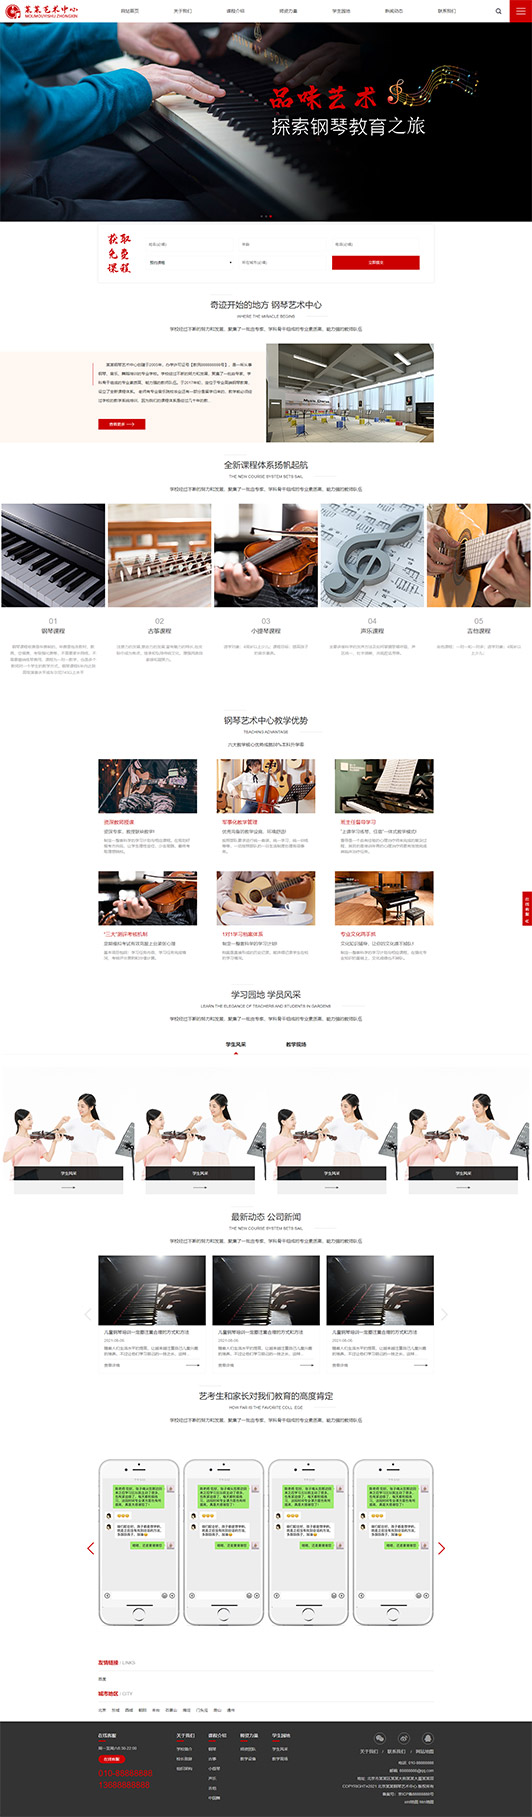 池州钢琴艺术培训公司响应式企业网站